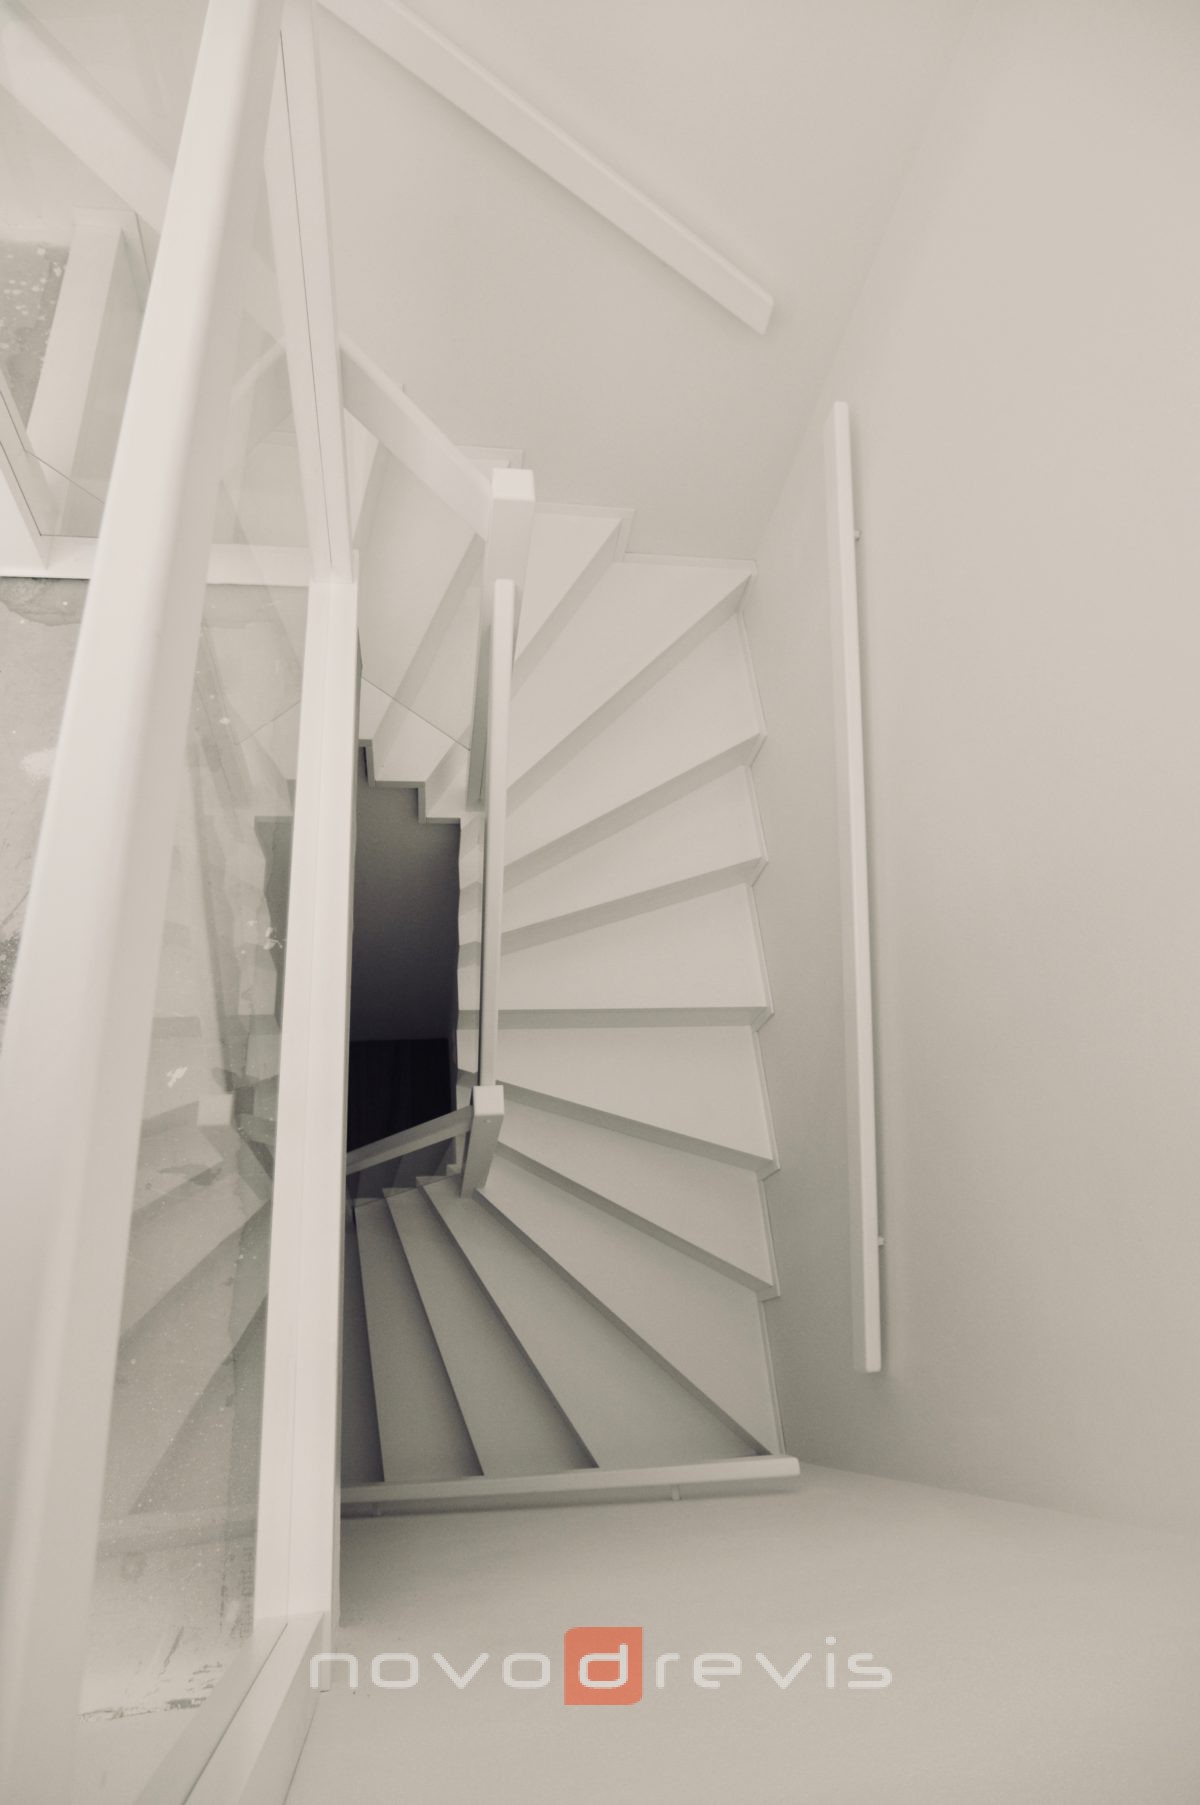 biele schodište so sklenou výplňou